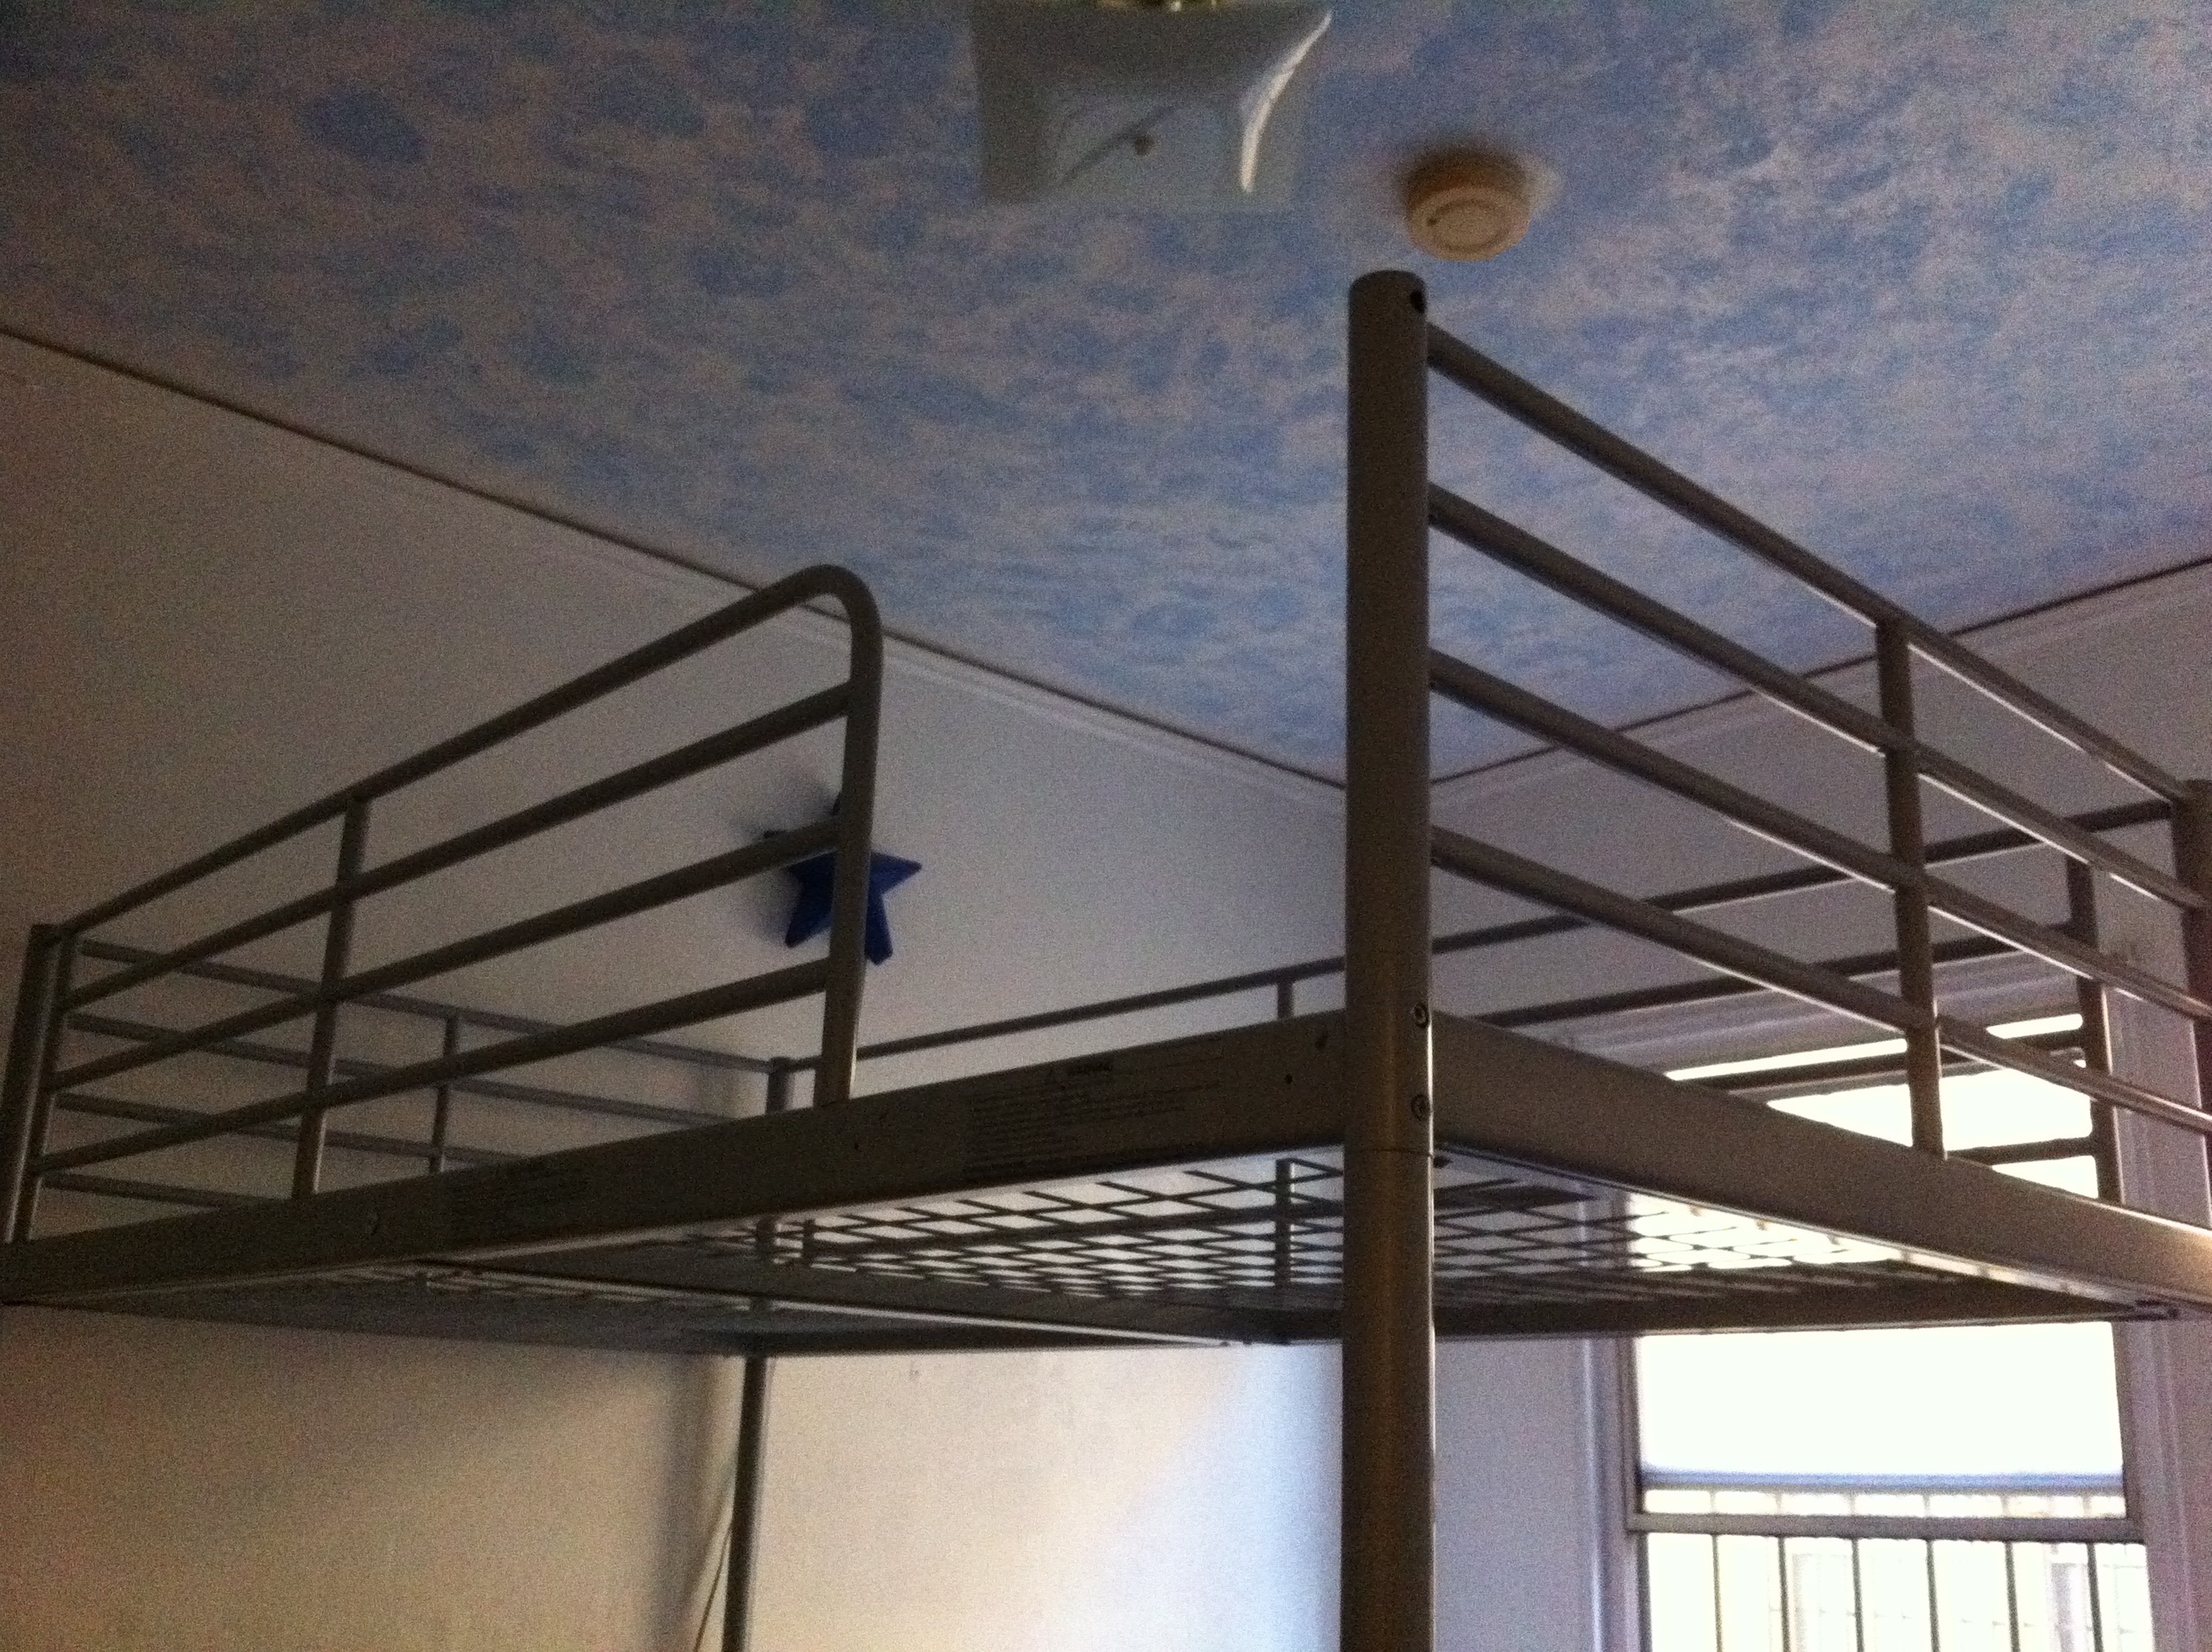 loft beds for sale craigslist